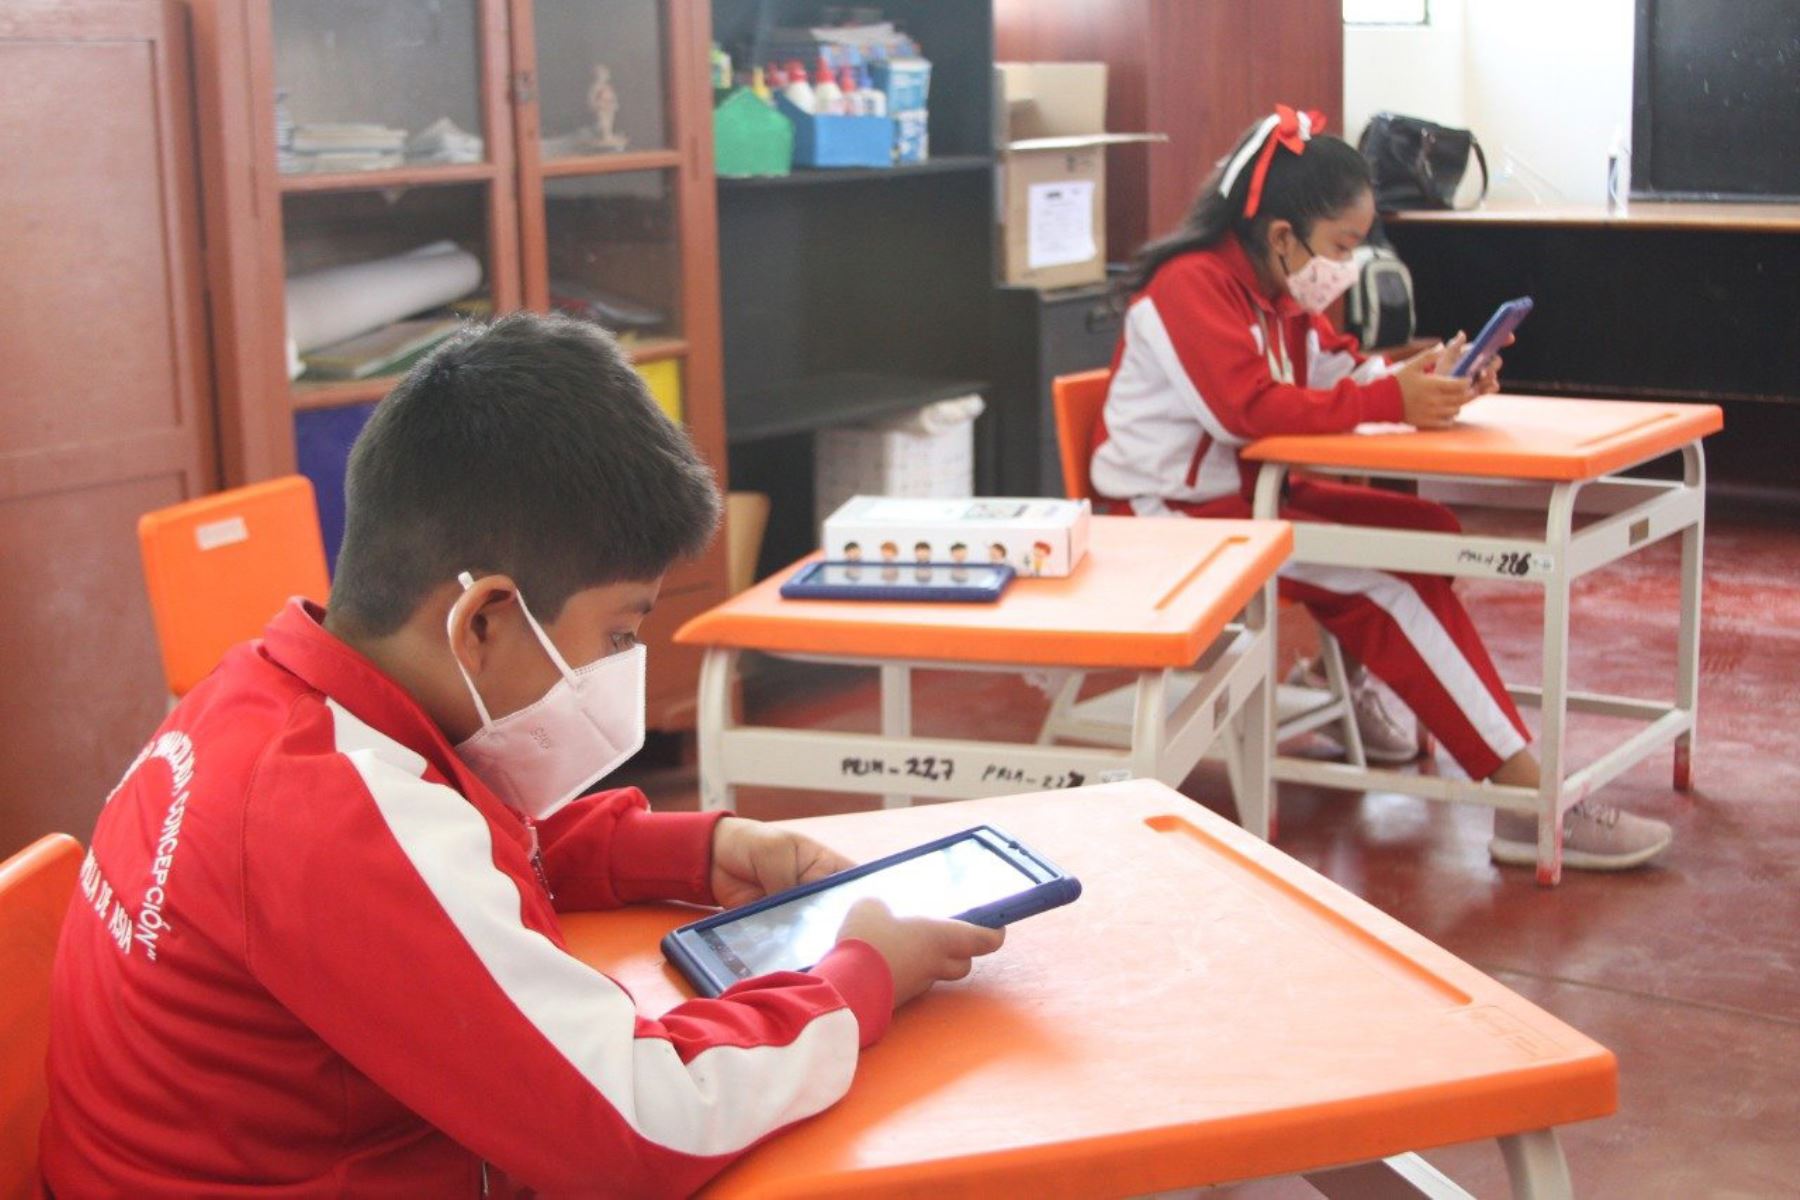 El ministro de Educación, Ricardo Cuenca, participó en la entrega de tabletas a estudiantes de la institución educativa 20123 del centro poblado de Asia, en la provincia limeña de Cañete. Foto: Minedu